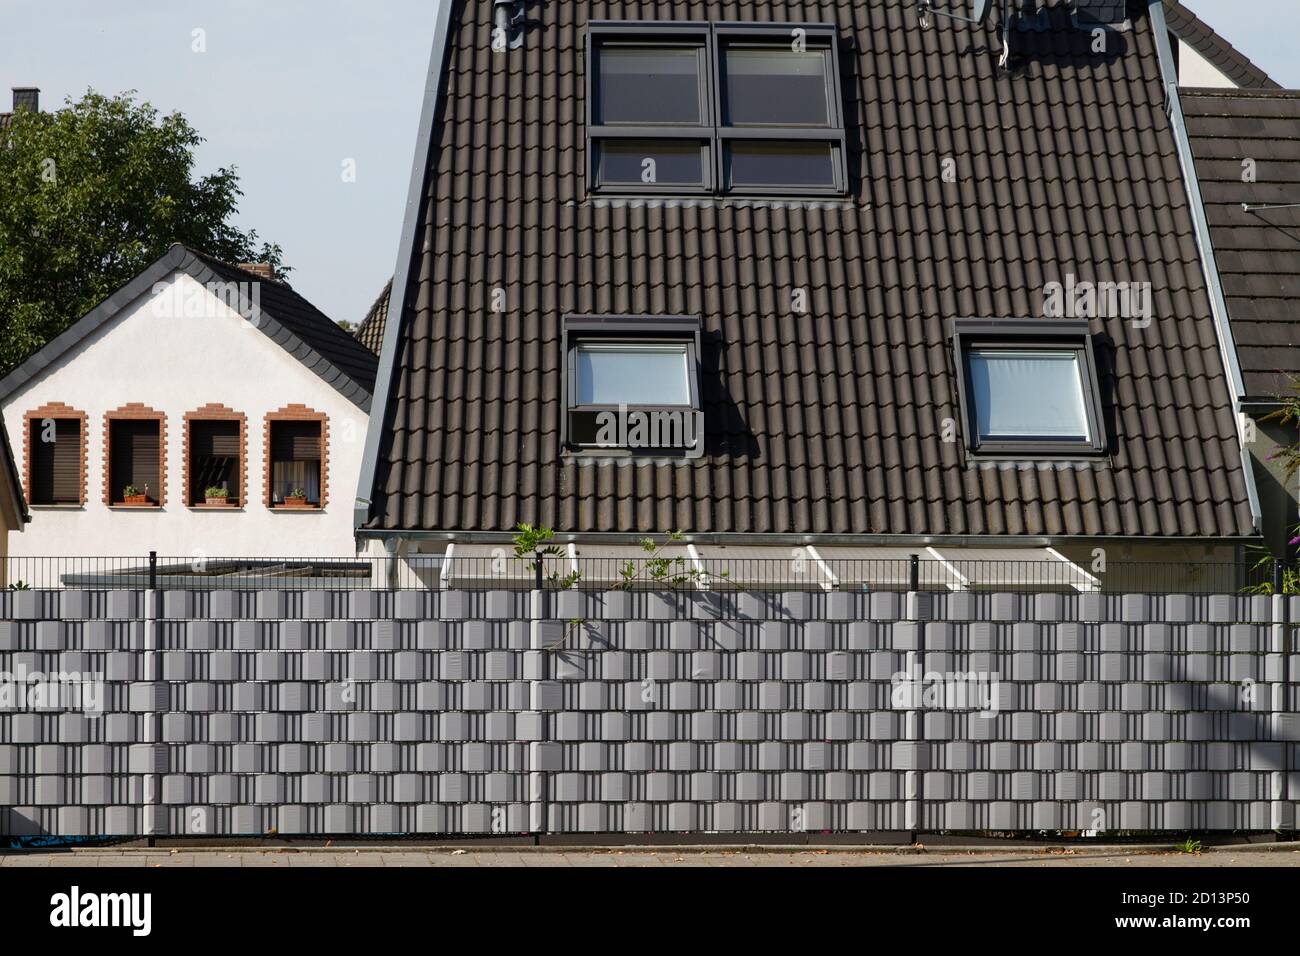 Maison résidentielle clôturée dans le quartier de Niehl, clôture en maille avec protection de la vie privée, Cologne, Allemagne. Eingezaeuntes Wohnhaus Stadtteil Niehl, Gitt Banque D'Images